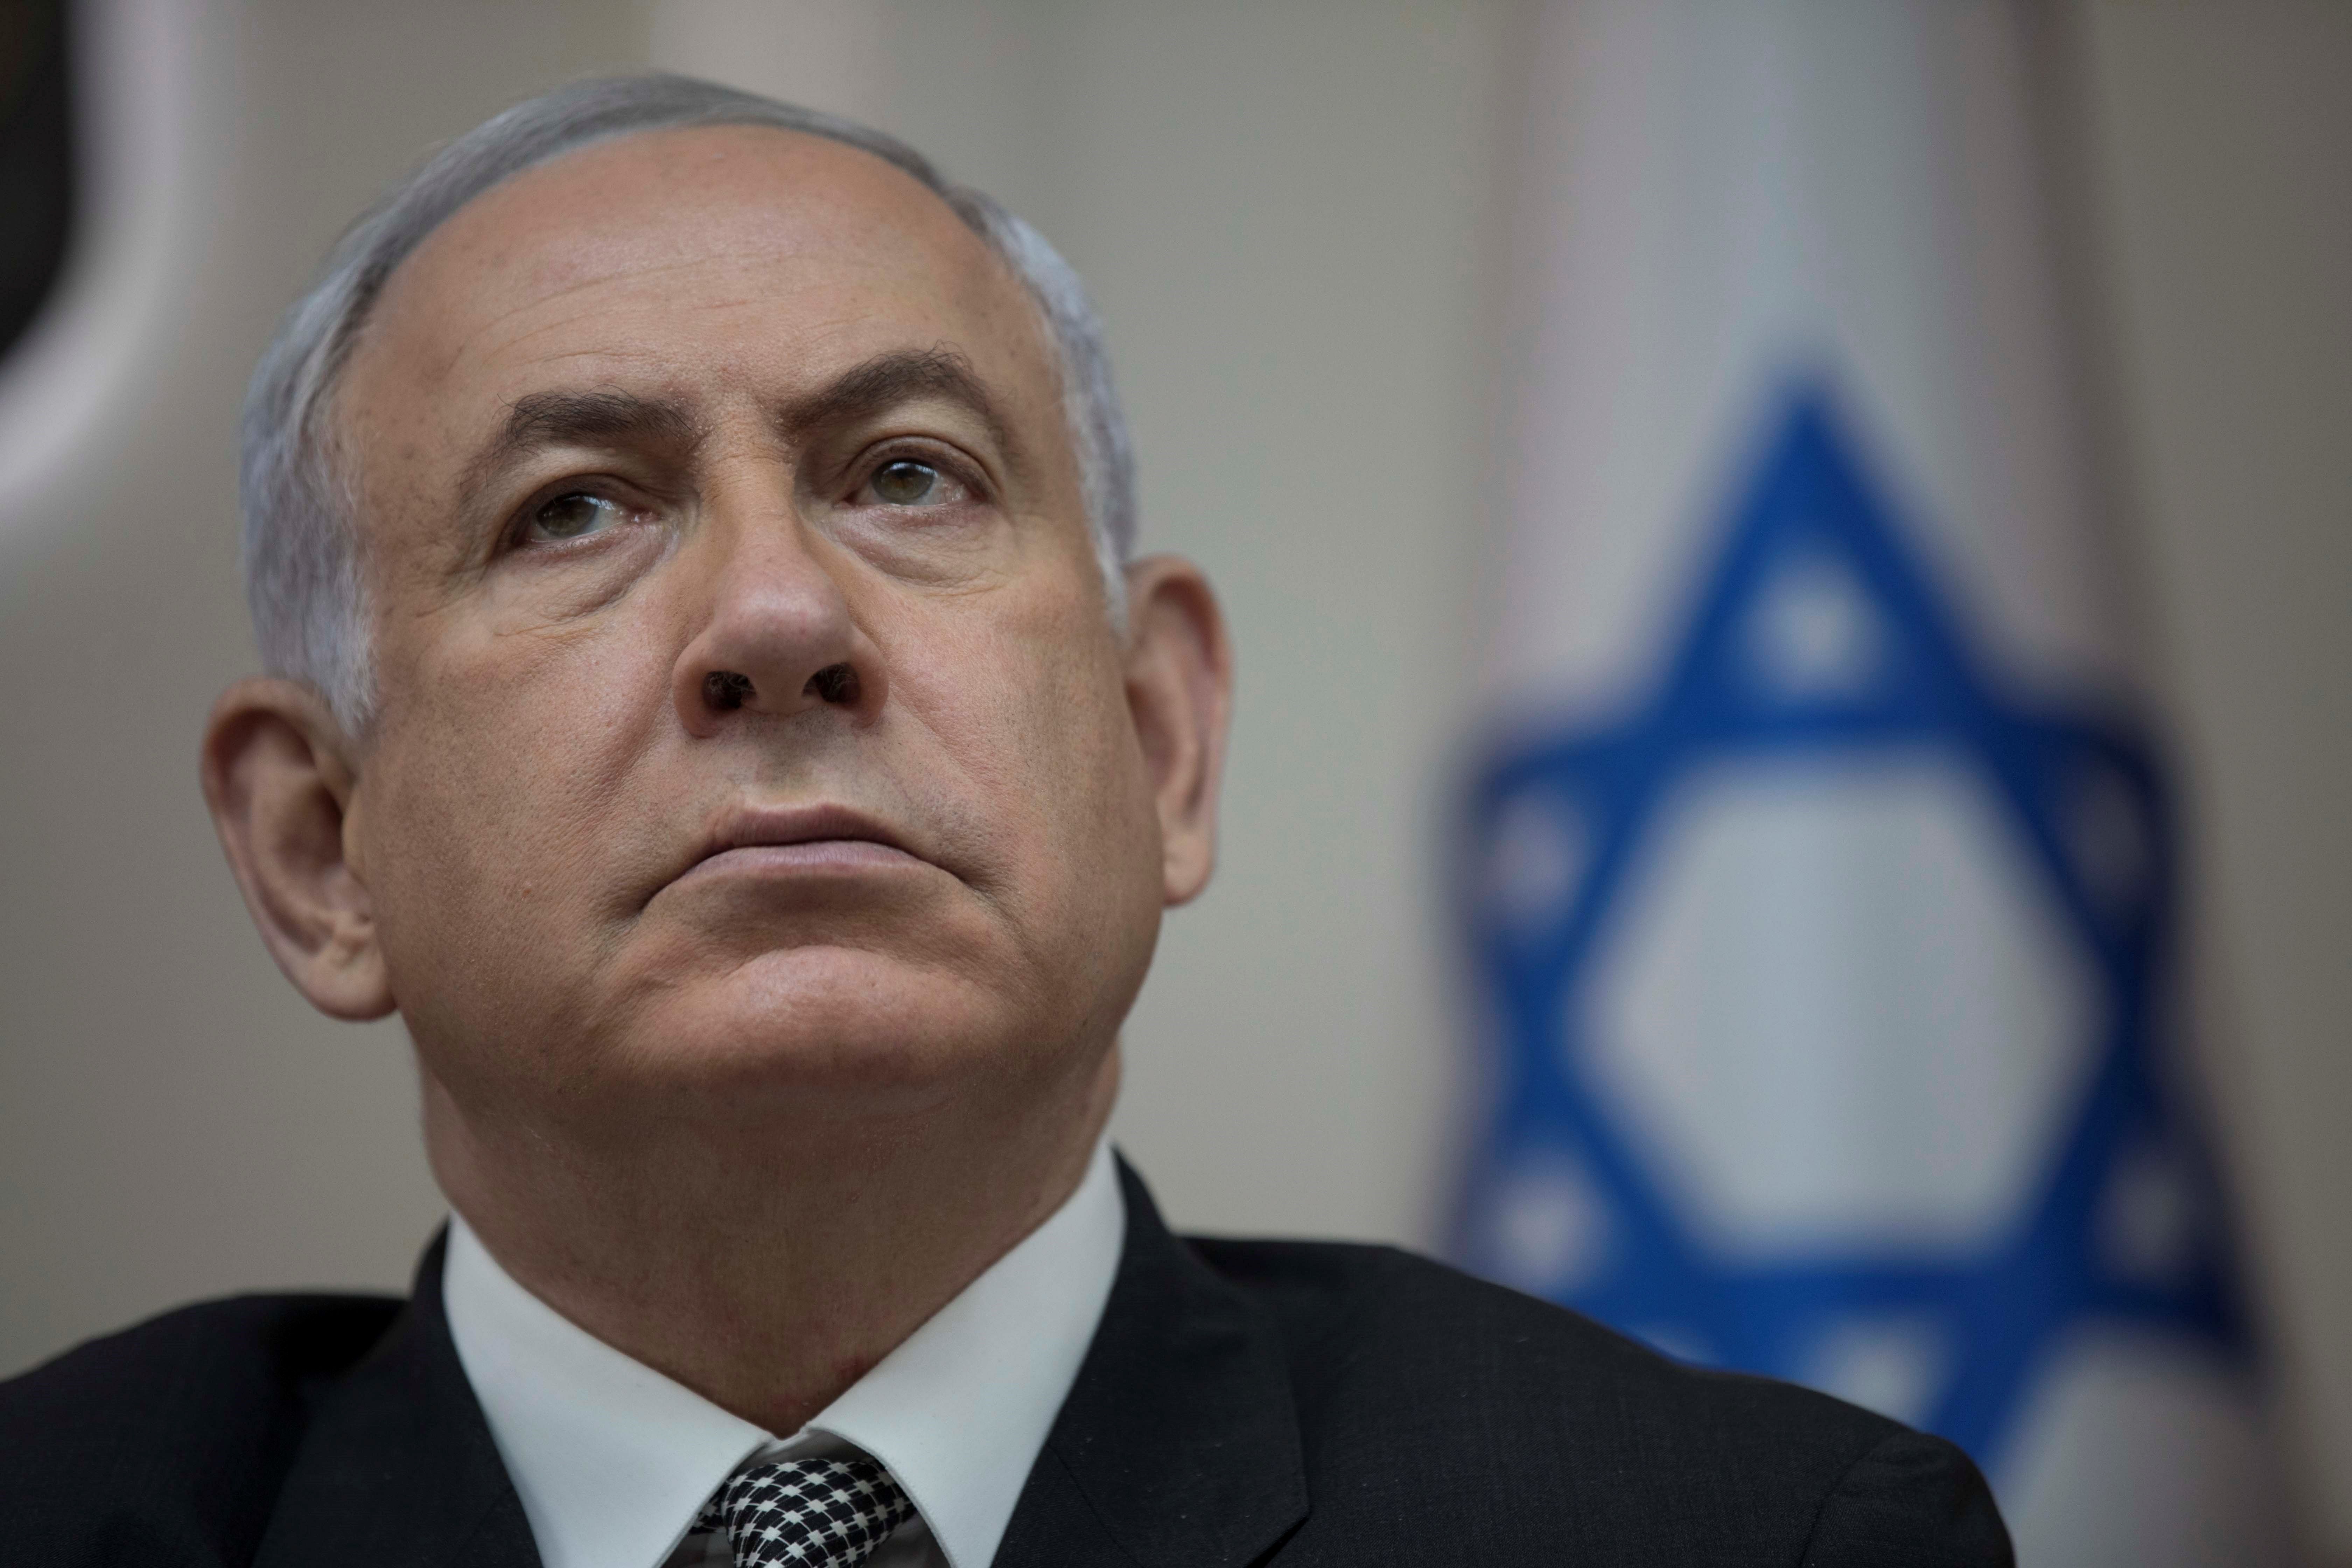 La Fiscalía israelí acusa a Netanyahu de fraude, cohecho y abuso de confianza